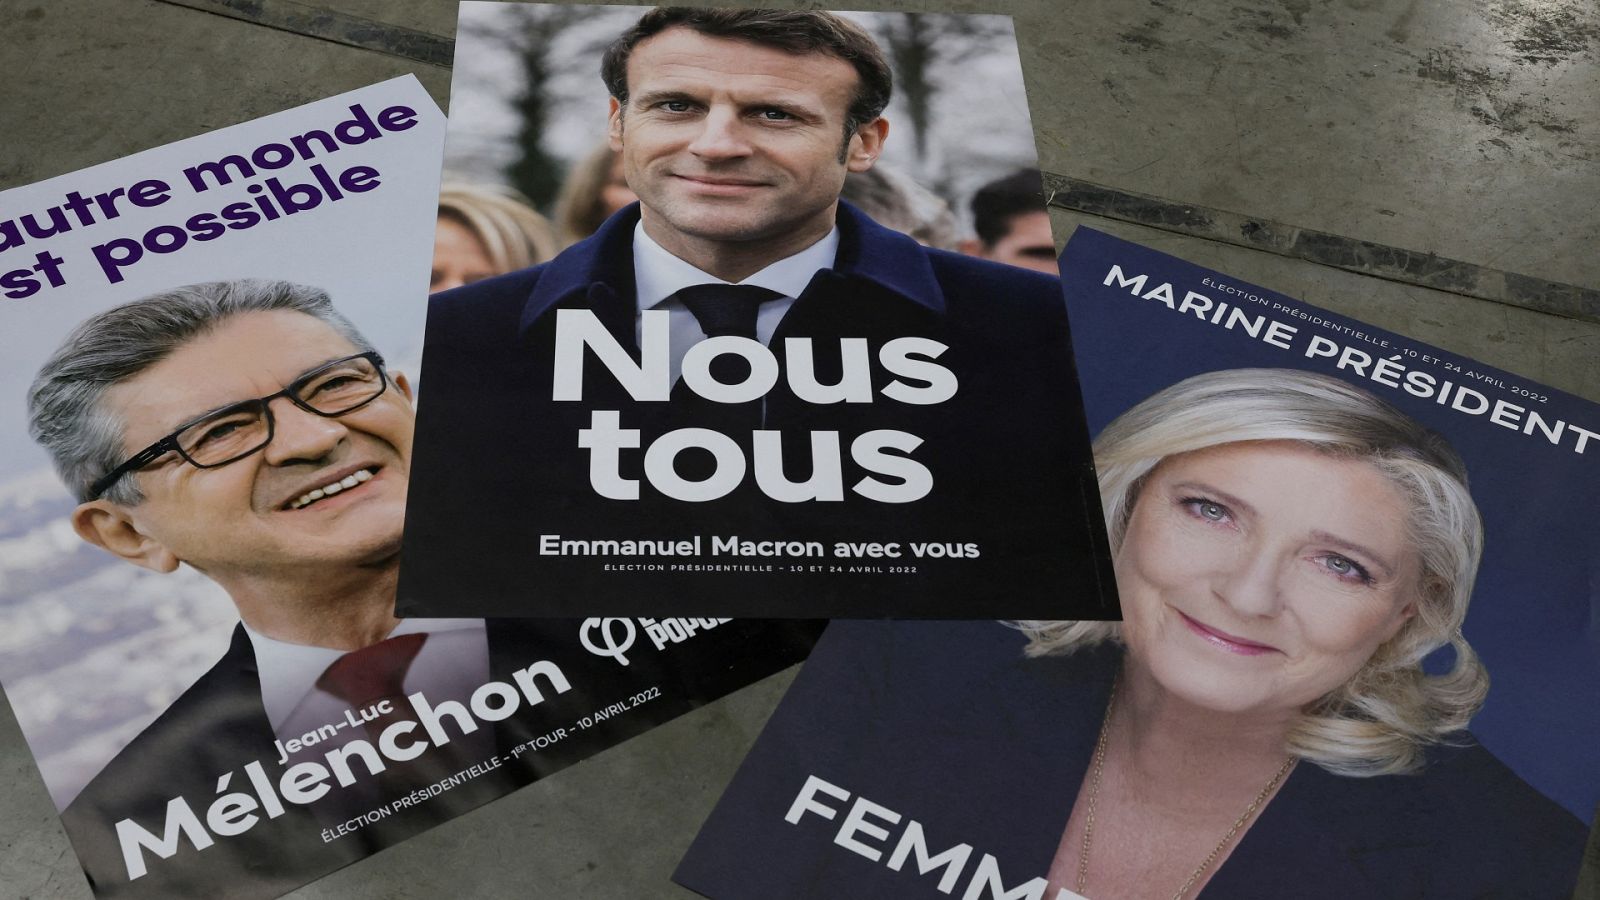 Pósteres oficiales de los candidatos Jean-Luc Mélenchon, Emmanuel Macron y Marine Le Pen en la campaña presidencial francesa